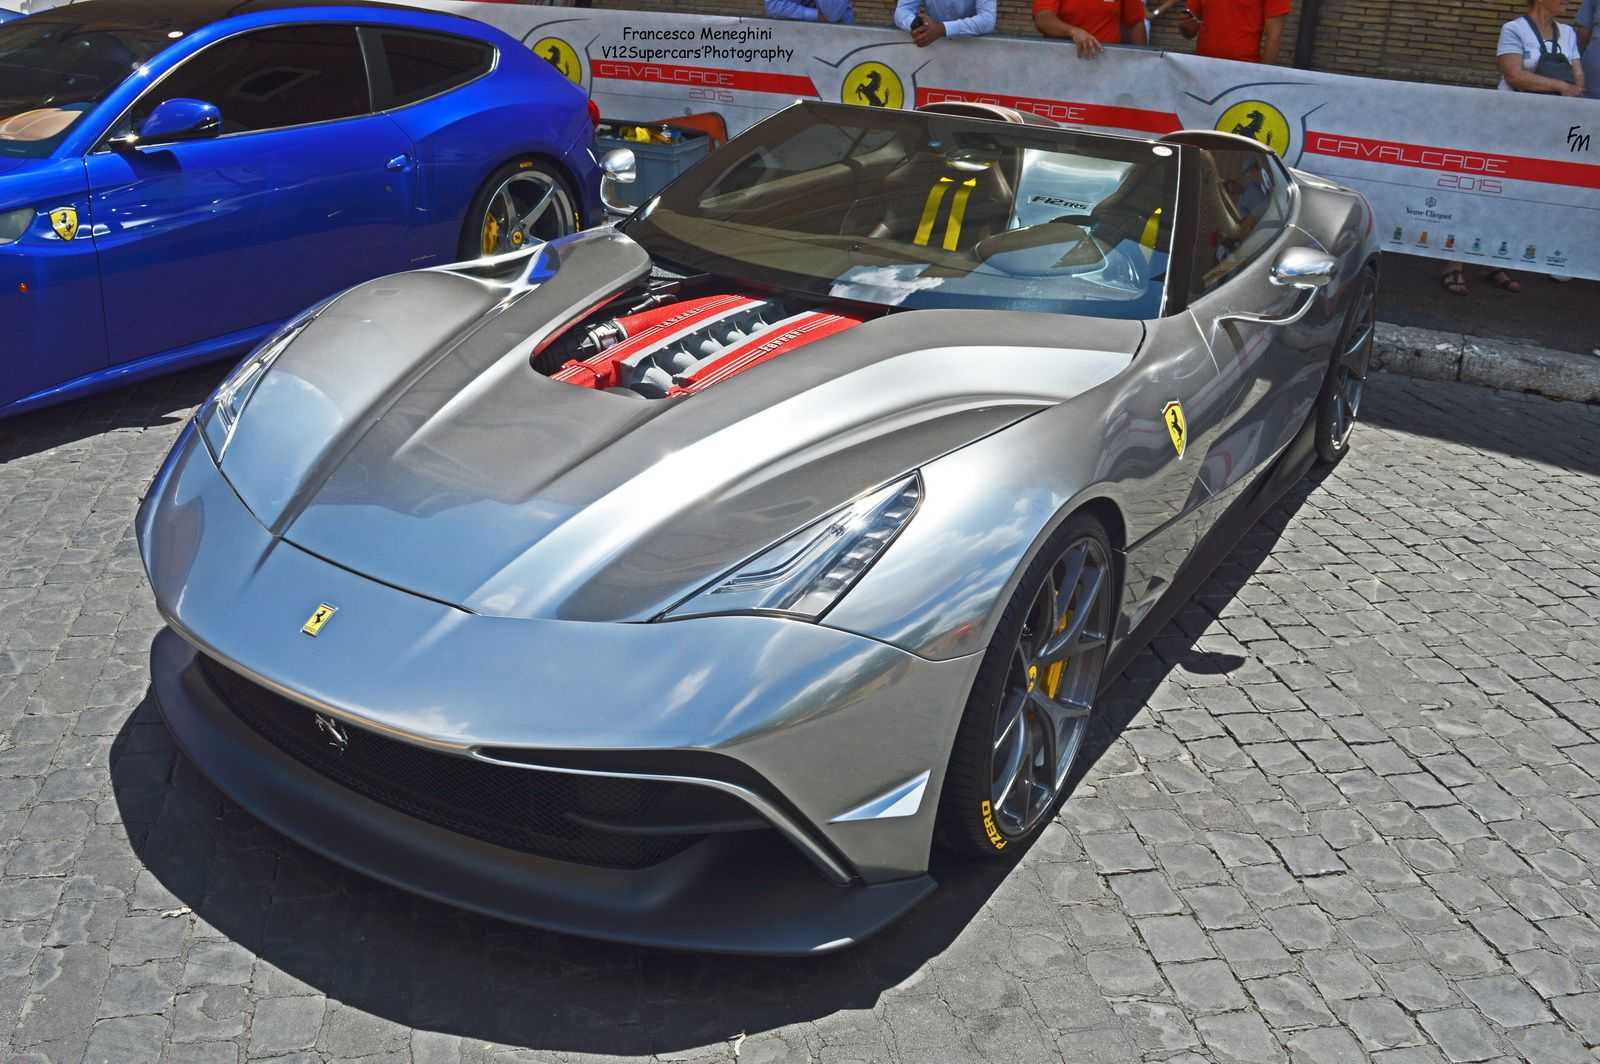 Ferrari F12 Trs In Beautiful Chrome Silver Seen In Rome